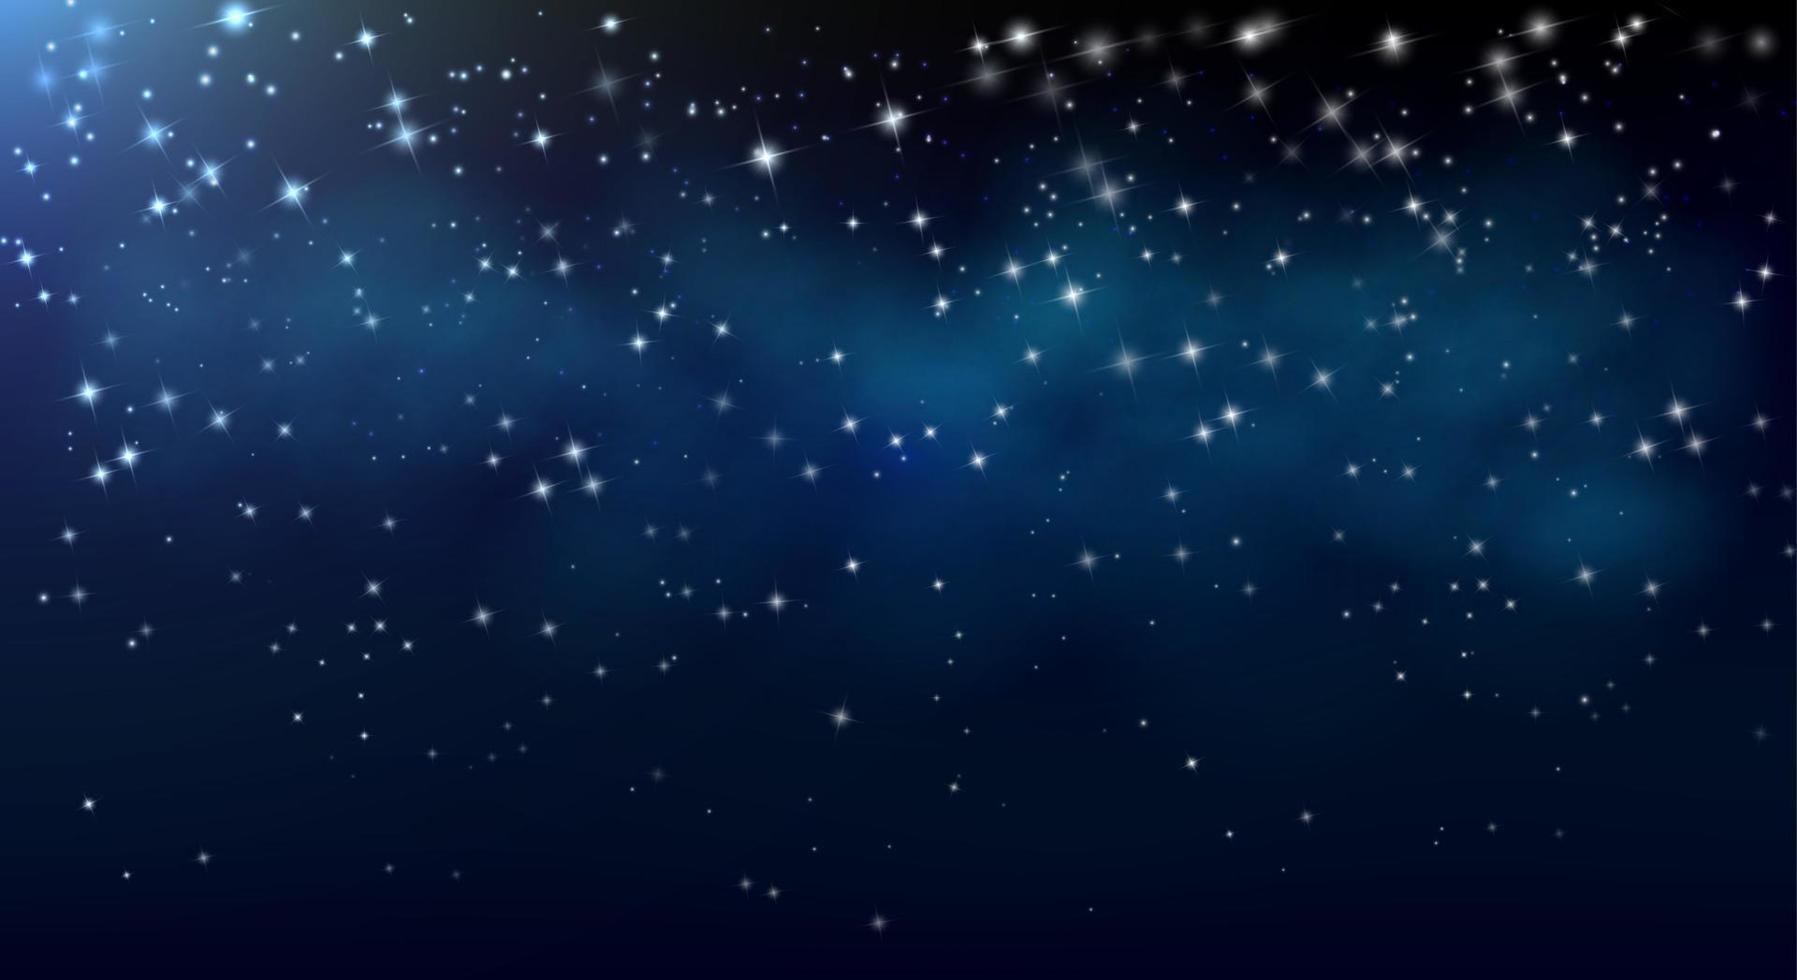 céu noturno com estrelas e a Via Láctea à distância. fundo de astronomia do espaço e do universo com cores azuis. vetor